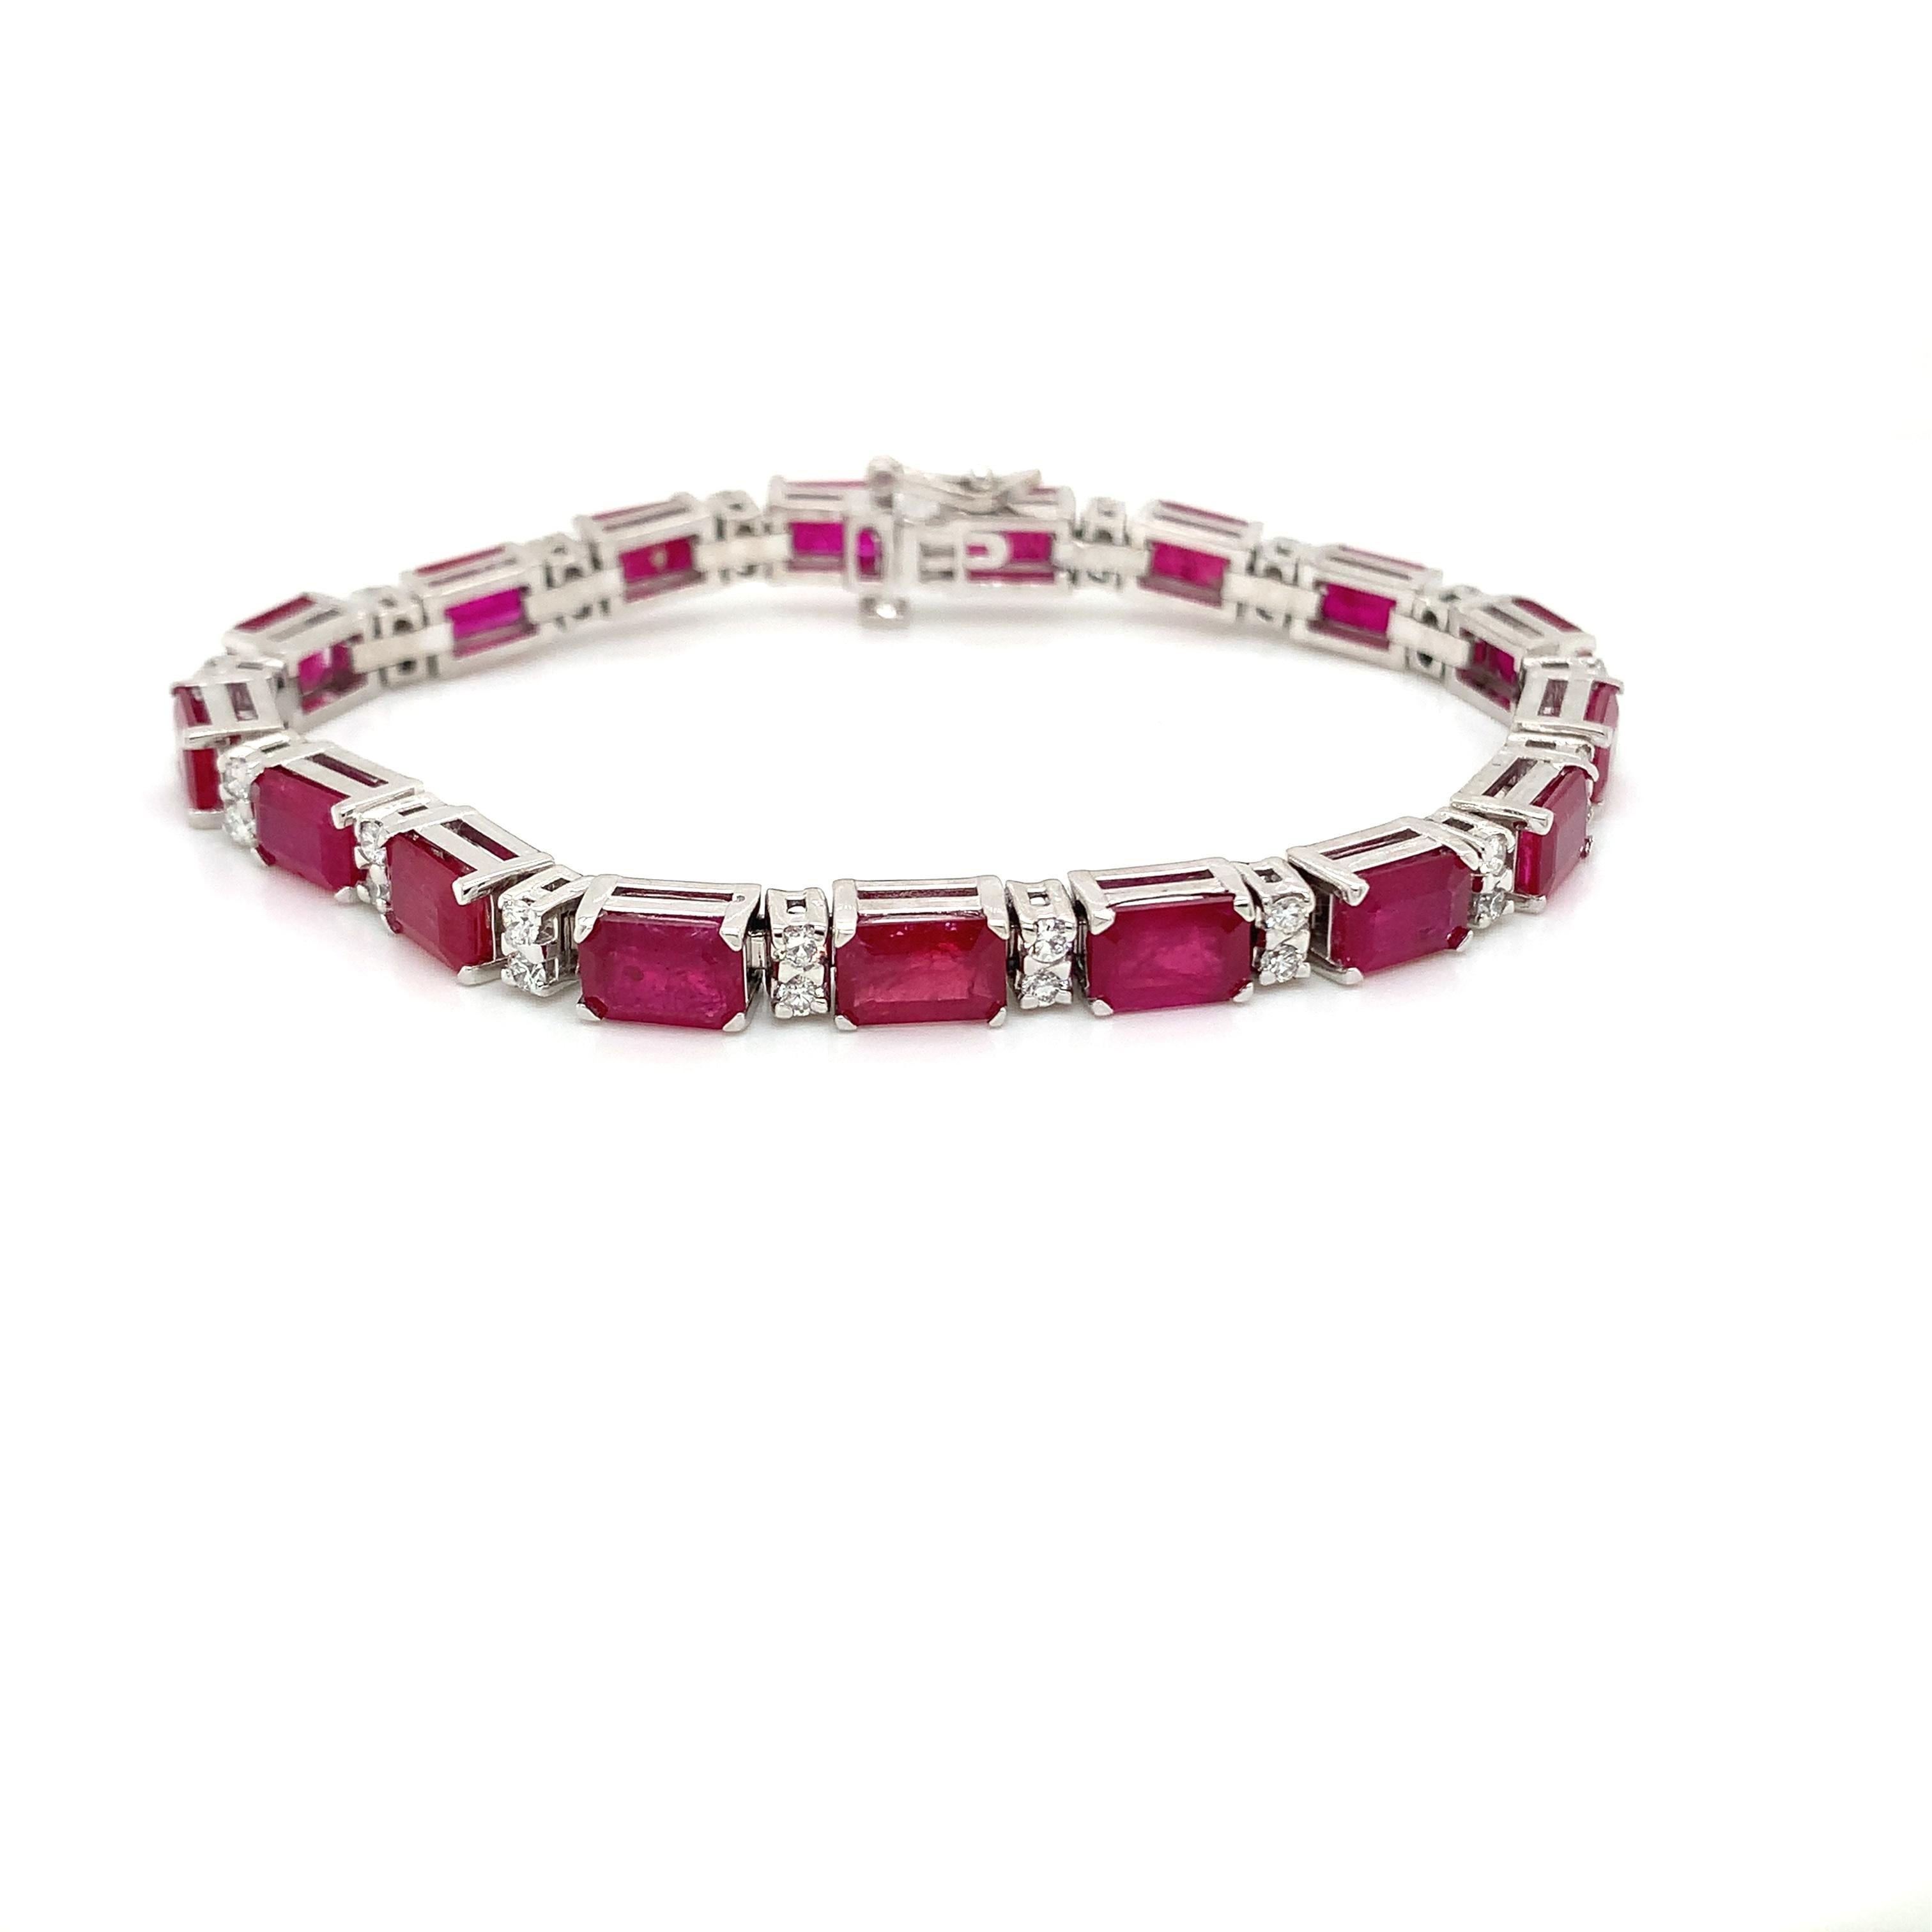 17 pièces de rubis E/C pesant 17.32 cts
Mesure (7,0x5,0) mm
32 pièces de diamants pesant 1,12 cts
Serti dans un bracelet en or blanc 14k
Taille du bracelet : 7 pouces.
